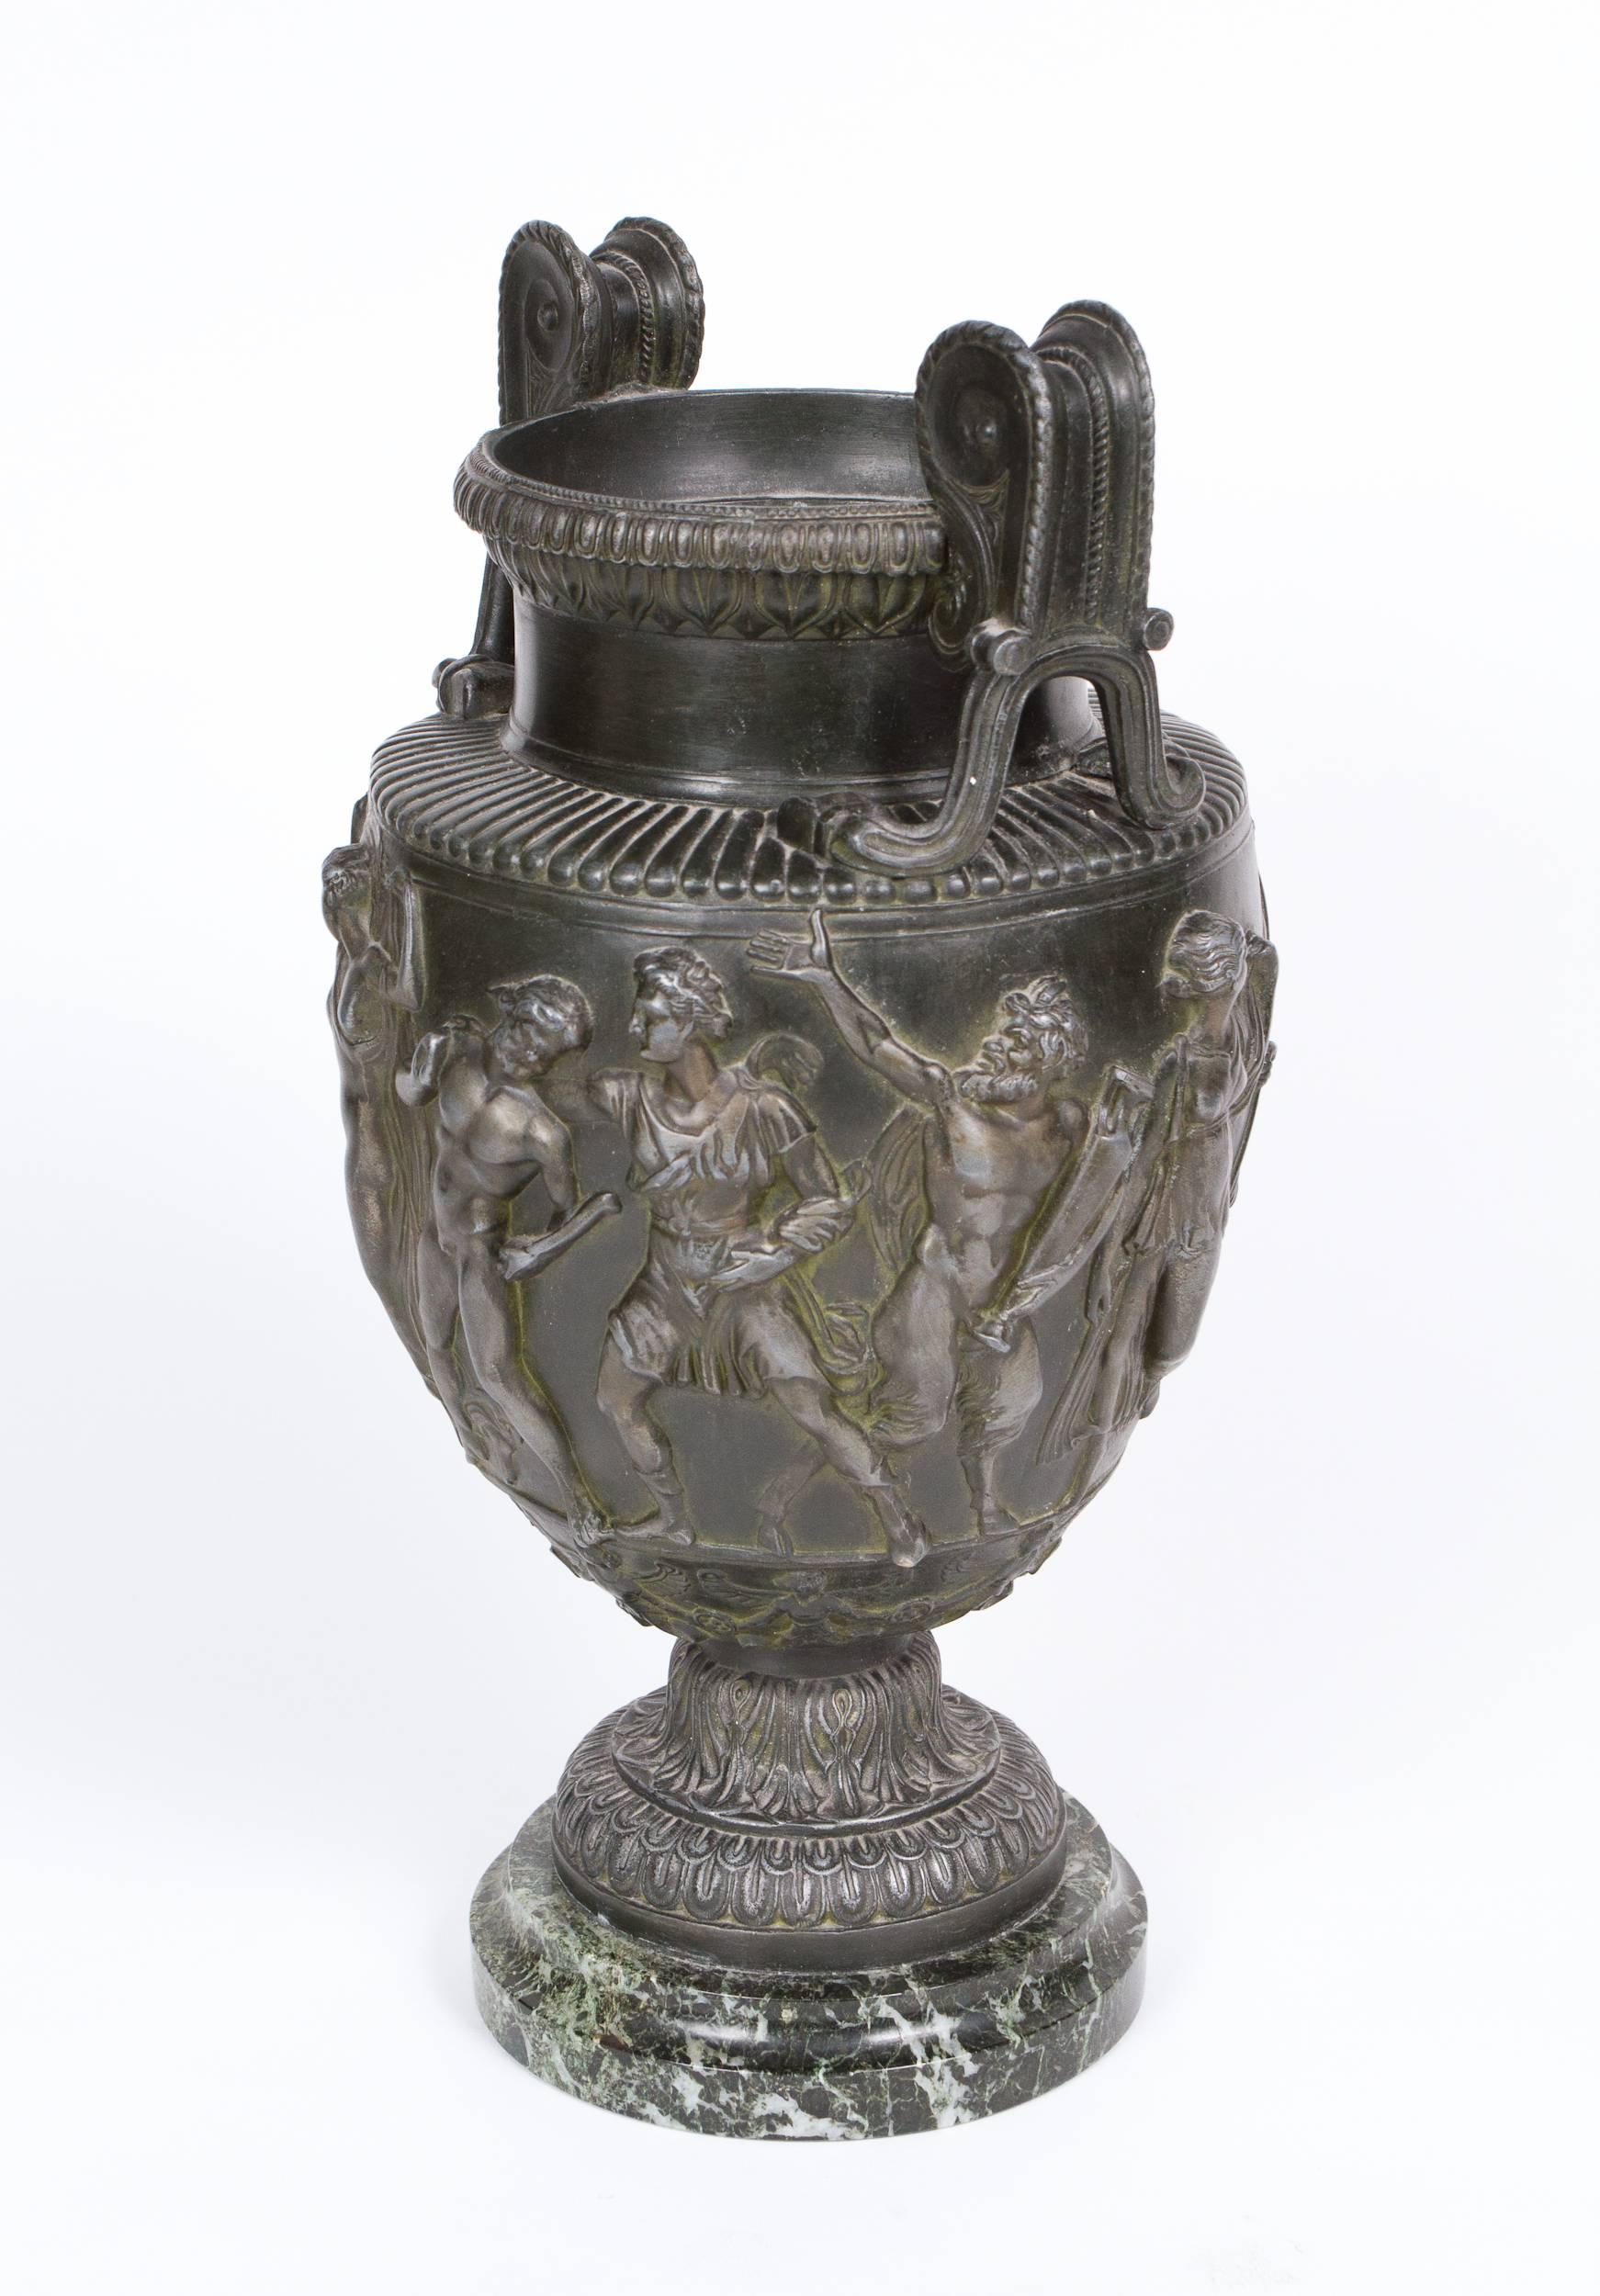 Vase Grand Tour Campana en métal patiné de style néoclassique présentant une frise représentant une procession bacchanale. Posé sur une base en marbre antico verde.